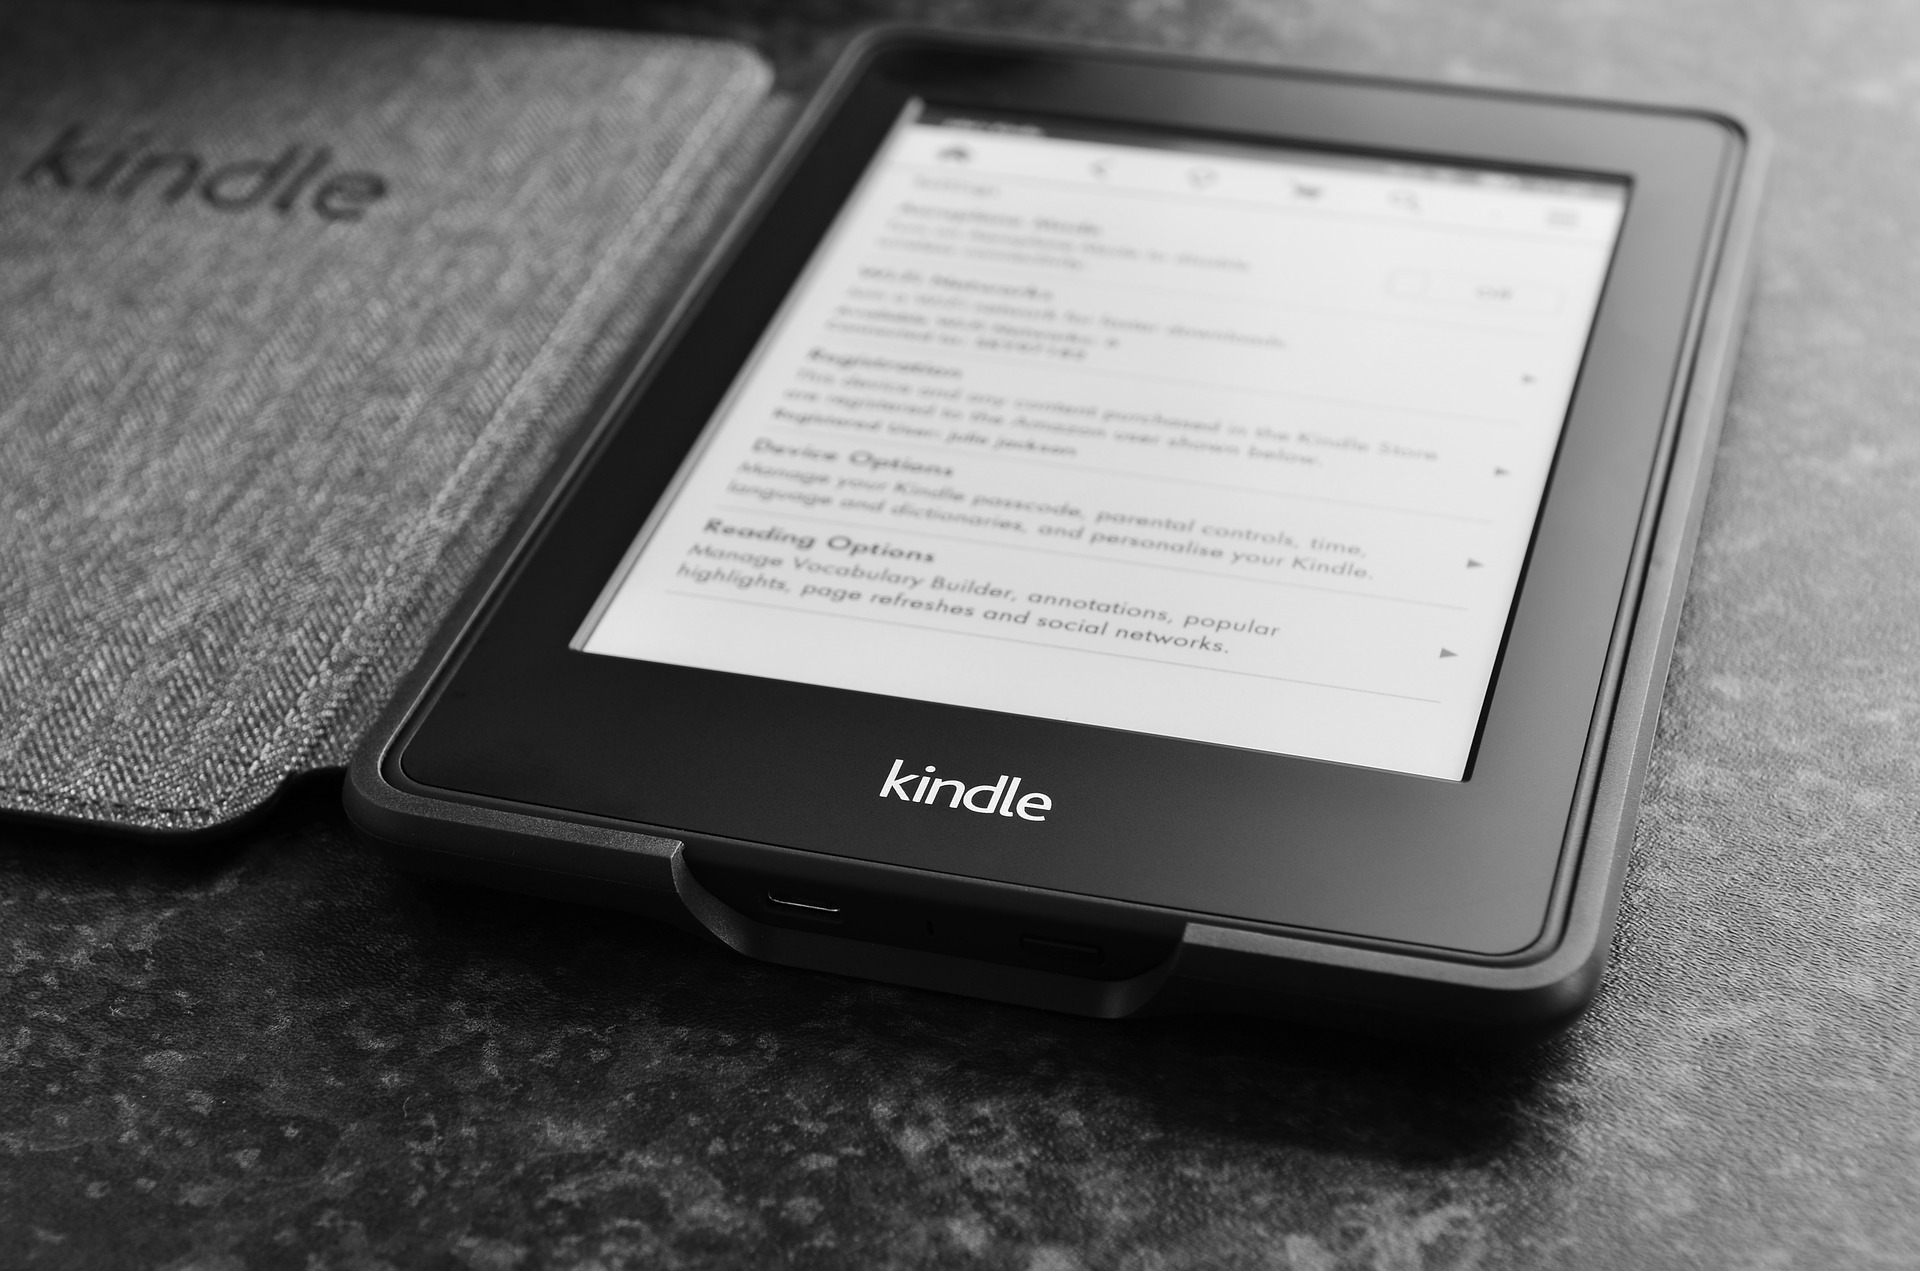 Kindle antigo não suportará compras de novos e-books; veja alternativas